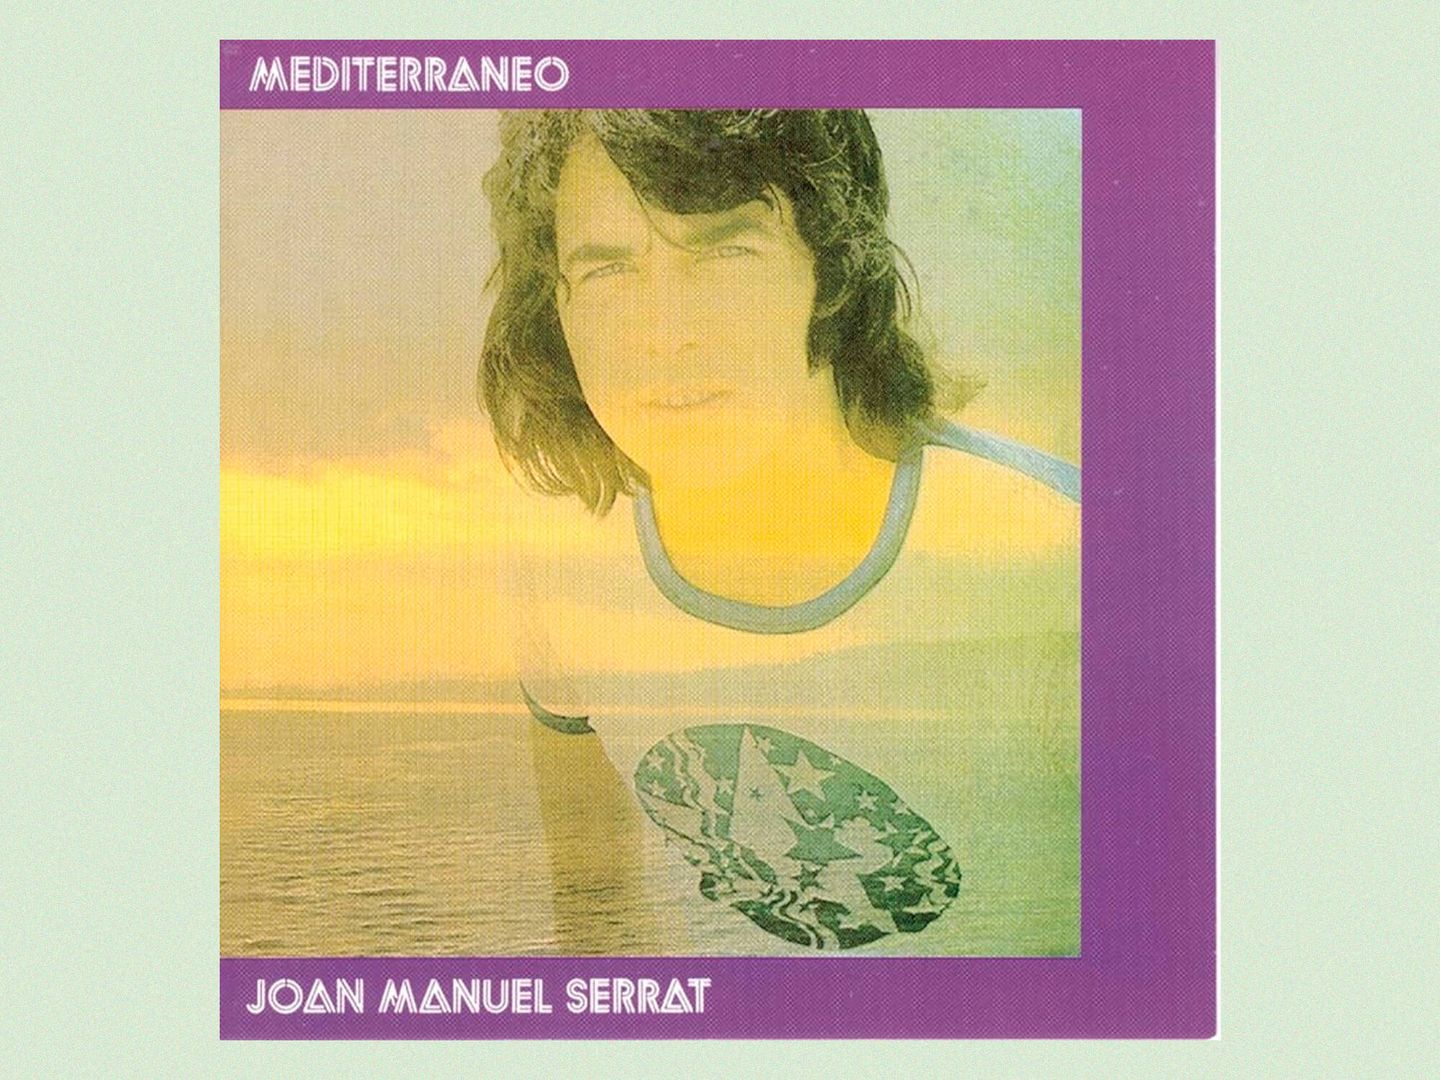 Portada de 'Mediterráneo', probablemente el disco más emblemático de Serrat.